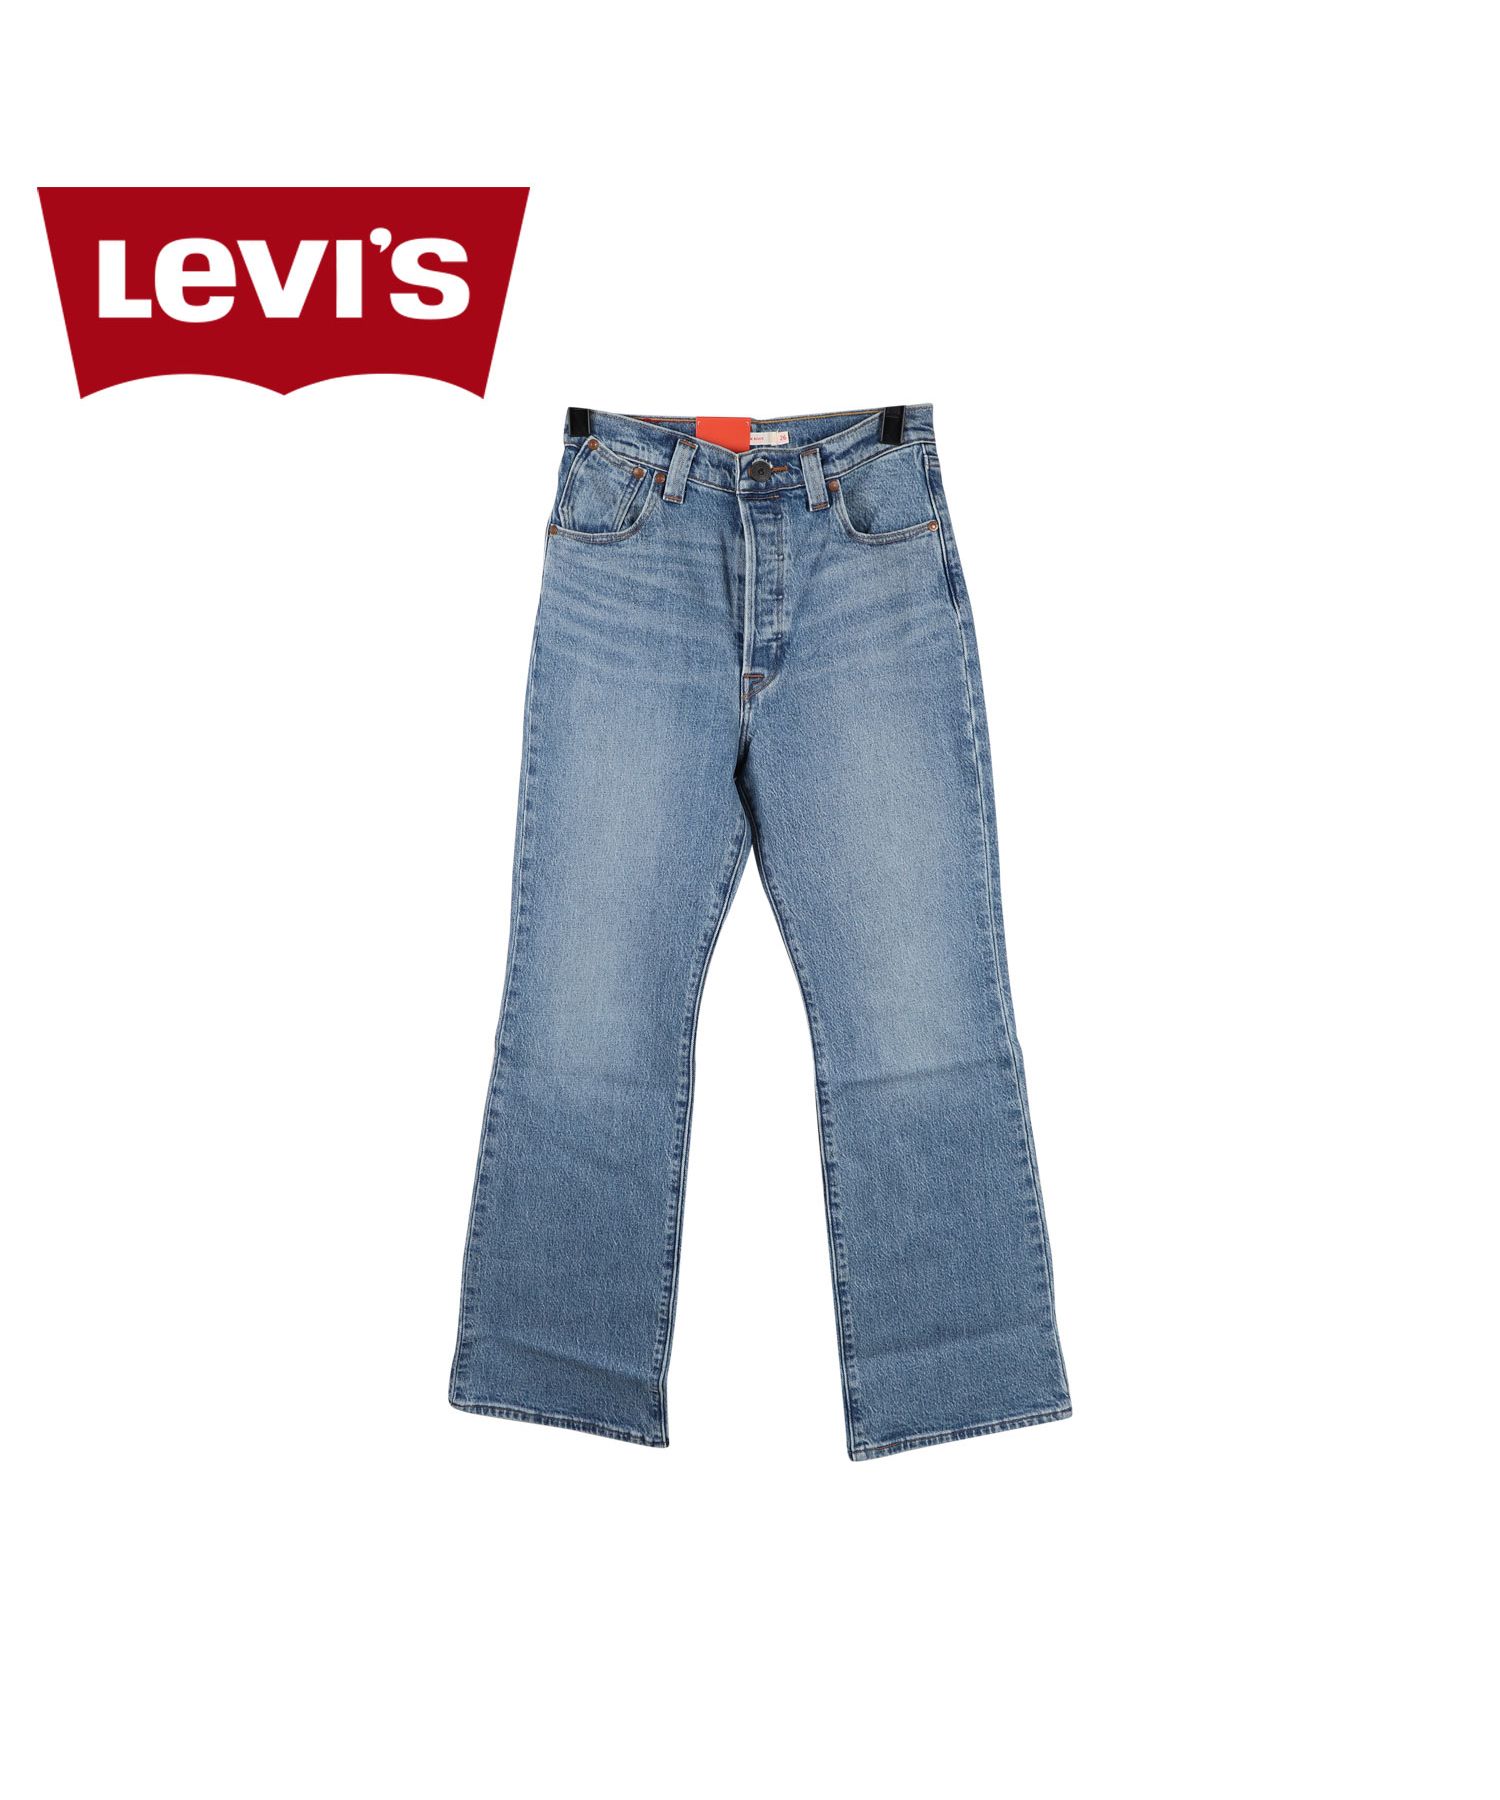 リーバイス(Levis) リーバイス レッド(Levis RED) ファッション | 通販